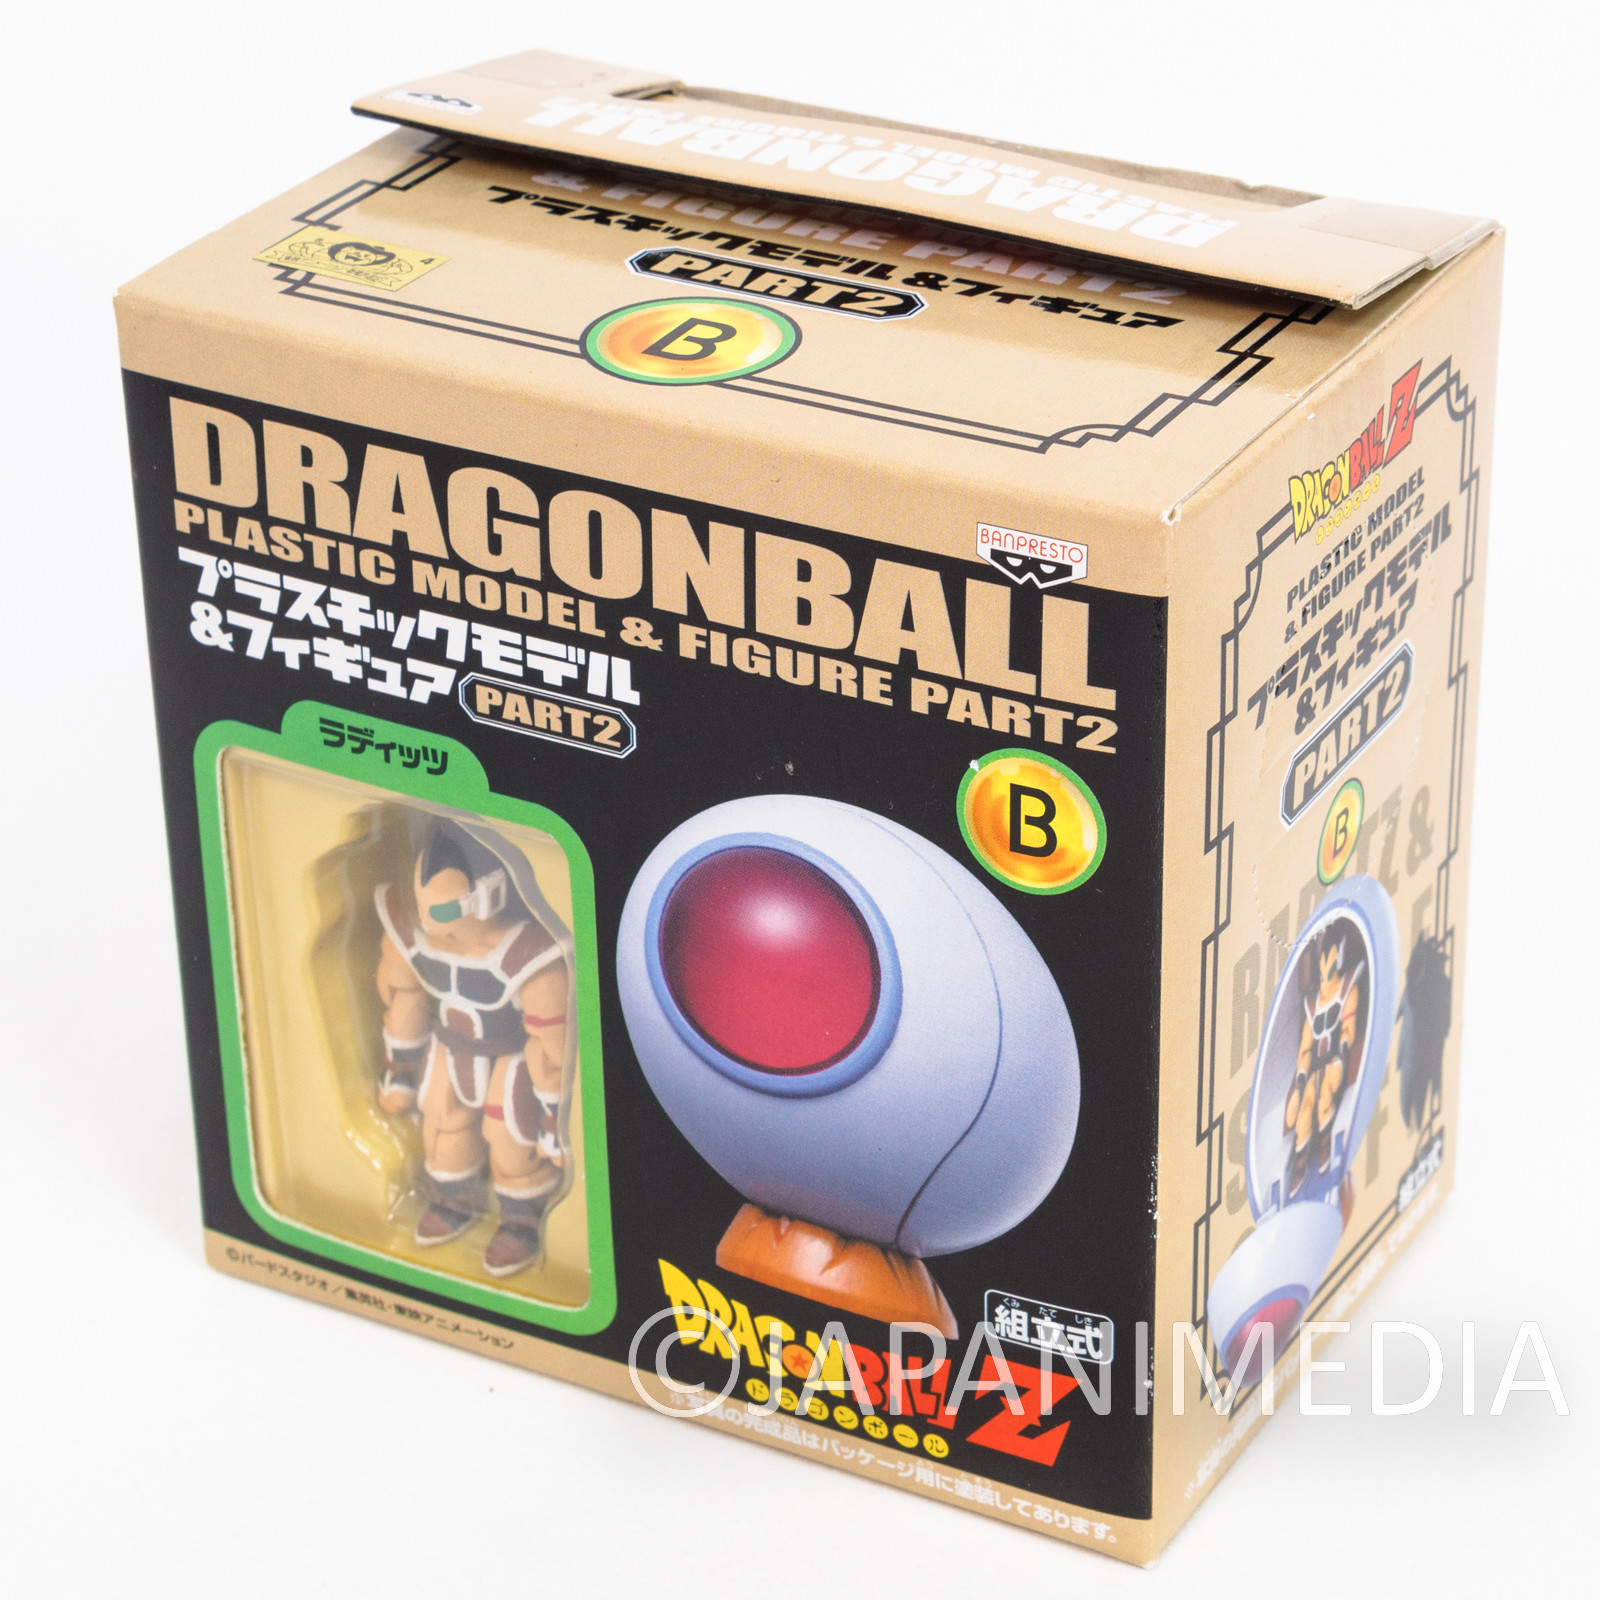 ドラゴンボール プラスチックモデル＆フィギュア PART2 5個セット-